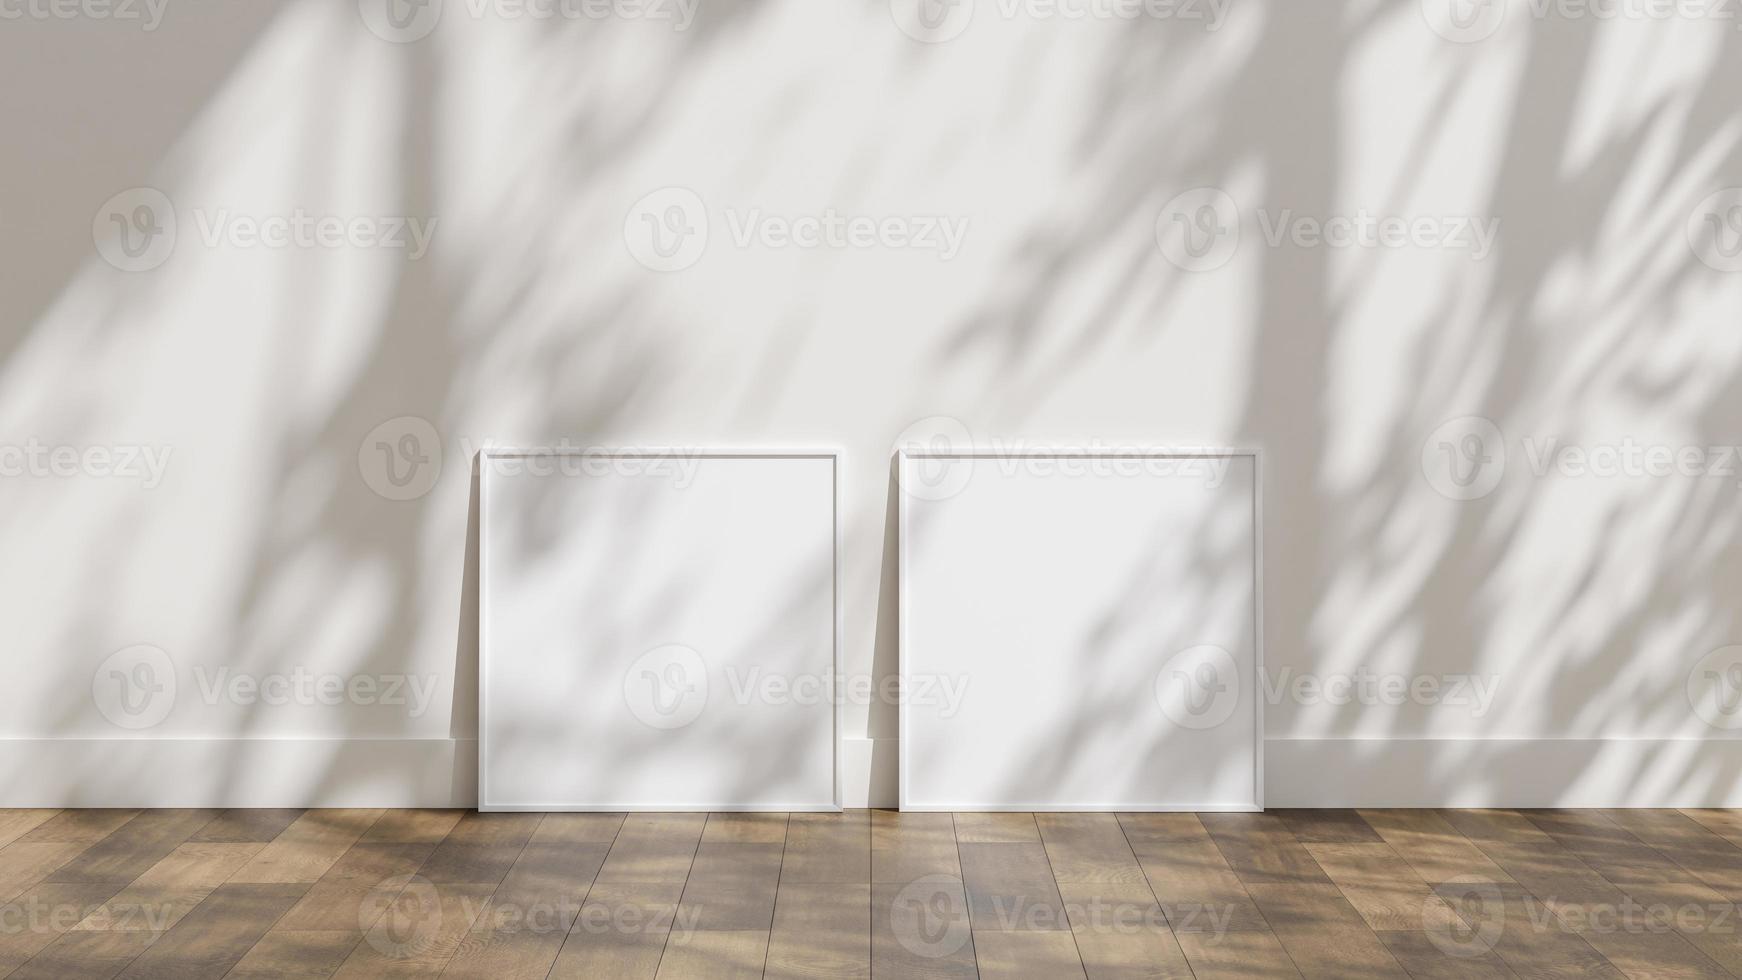 maqueta de póster de marco en piso de madera con pared blanca y superposición de sombra de luz solar foto